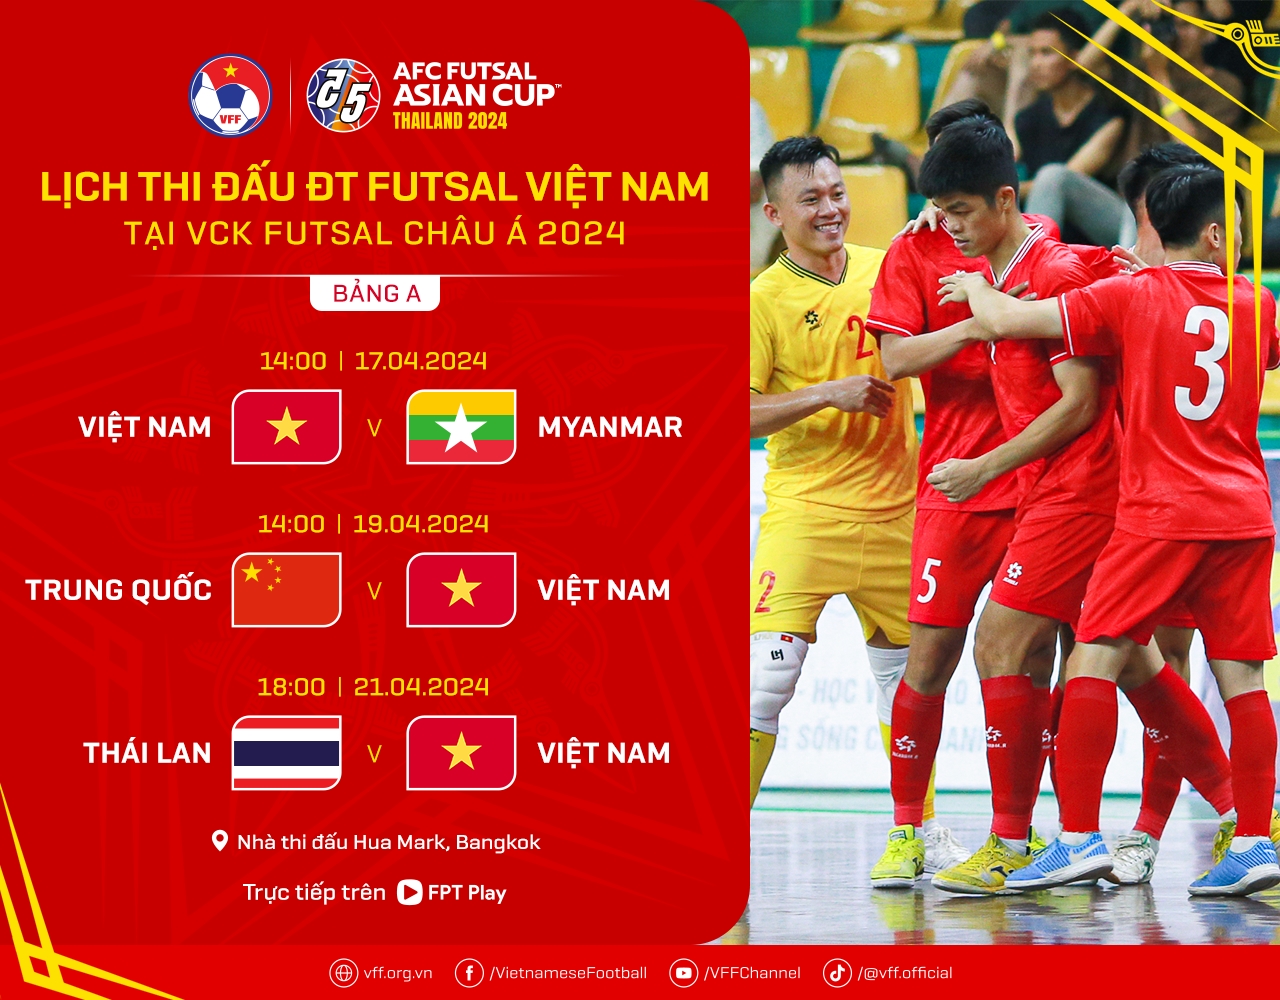 Vừa tới Thái Lan, ĐT futsal Việt Nam lao ngay vào tập luyện - Bóng Đá